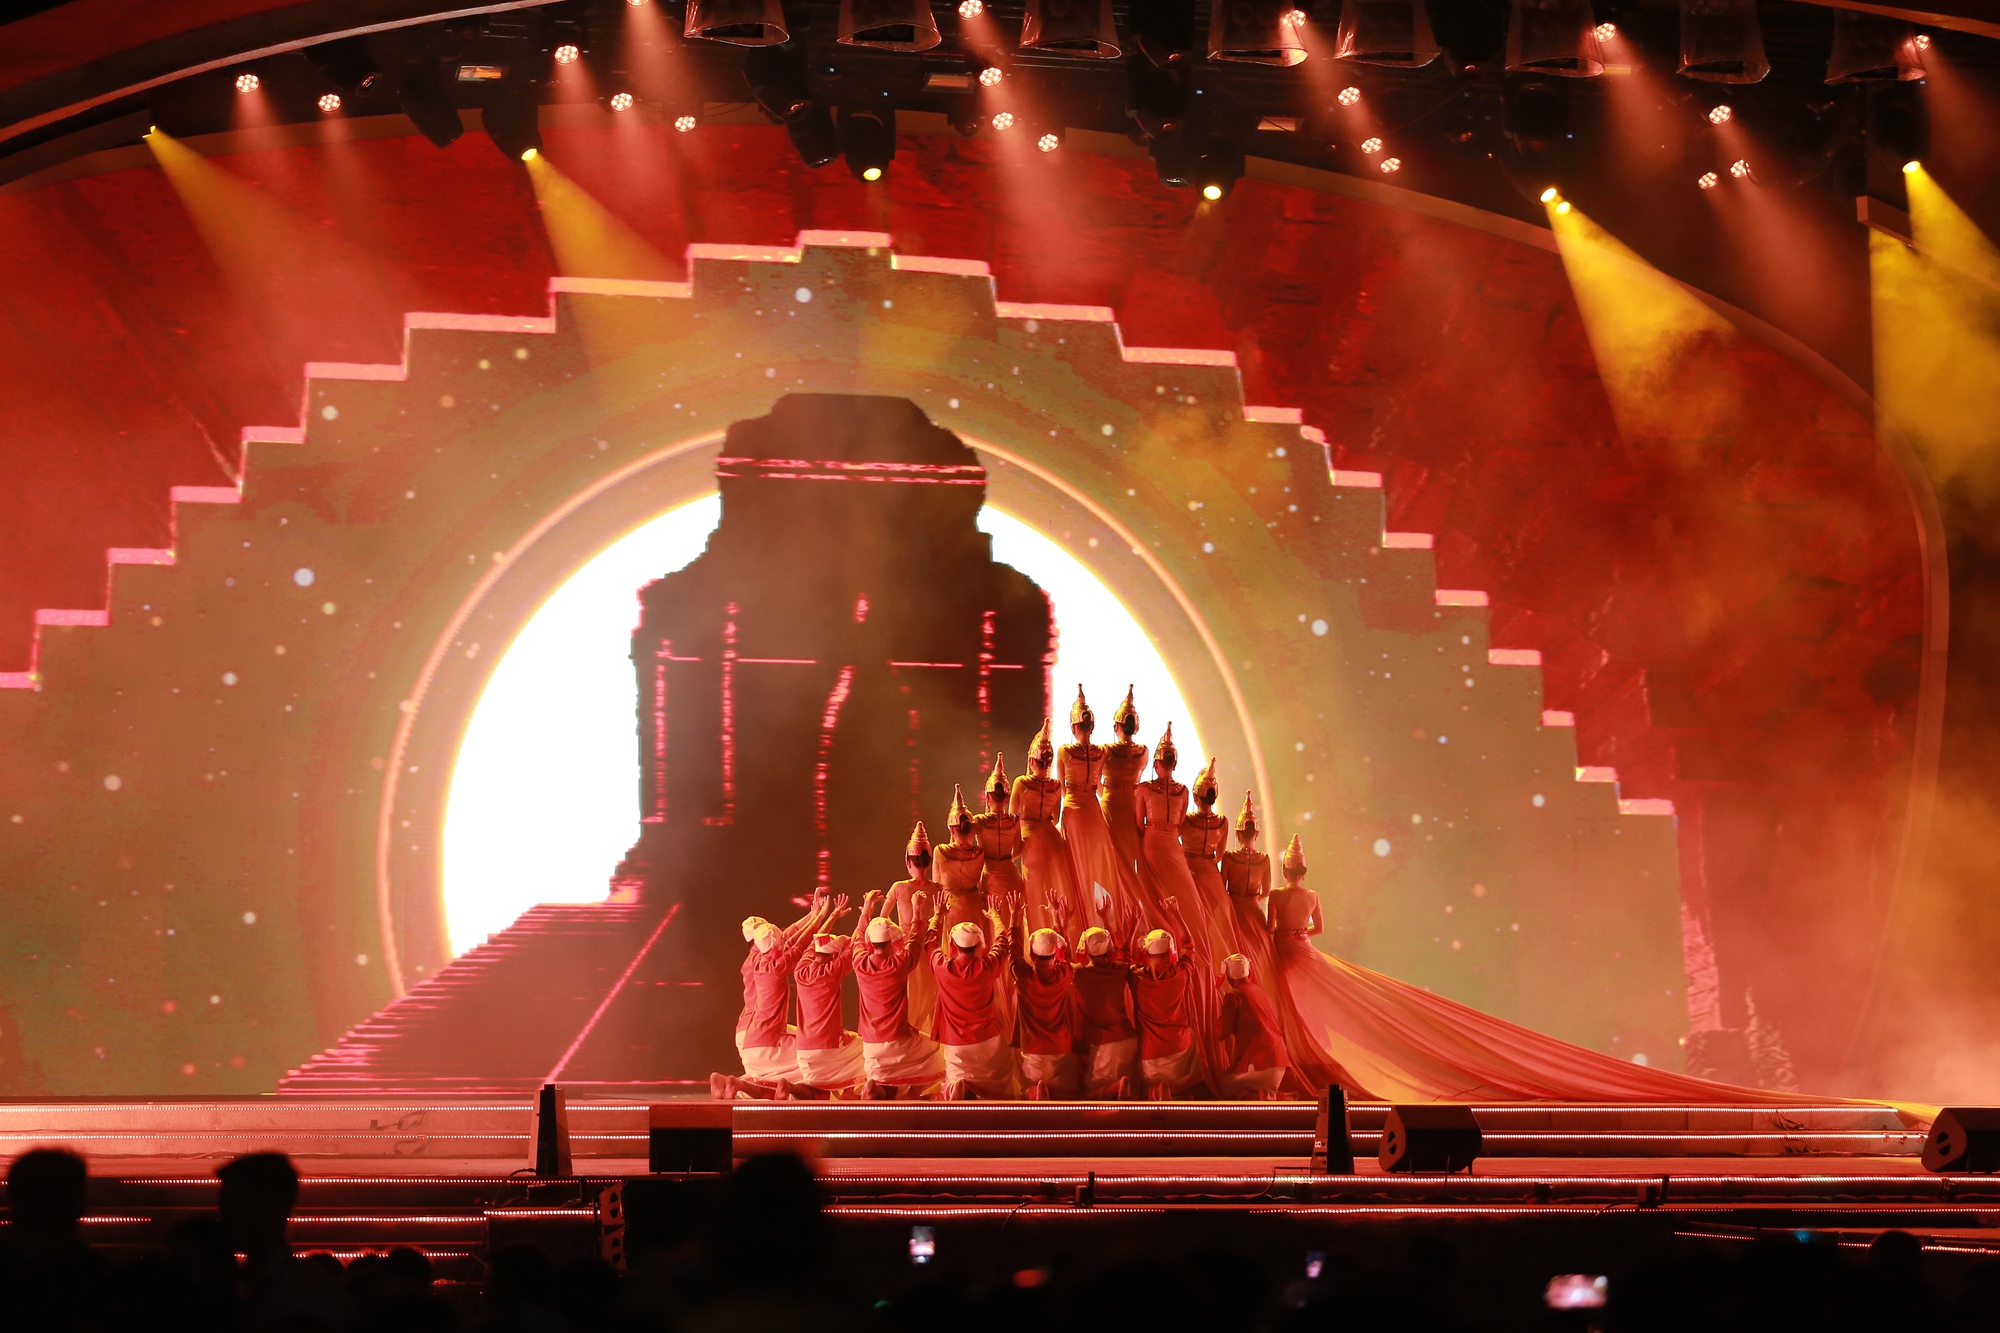 Đà Nẵng: Pháo hoa rực sáng báo hiệu sự hồi sinh của ngành du lịch trong đêm đại nhạc hội - Ảnh 7.